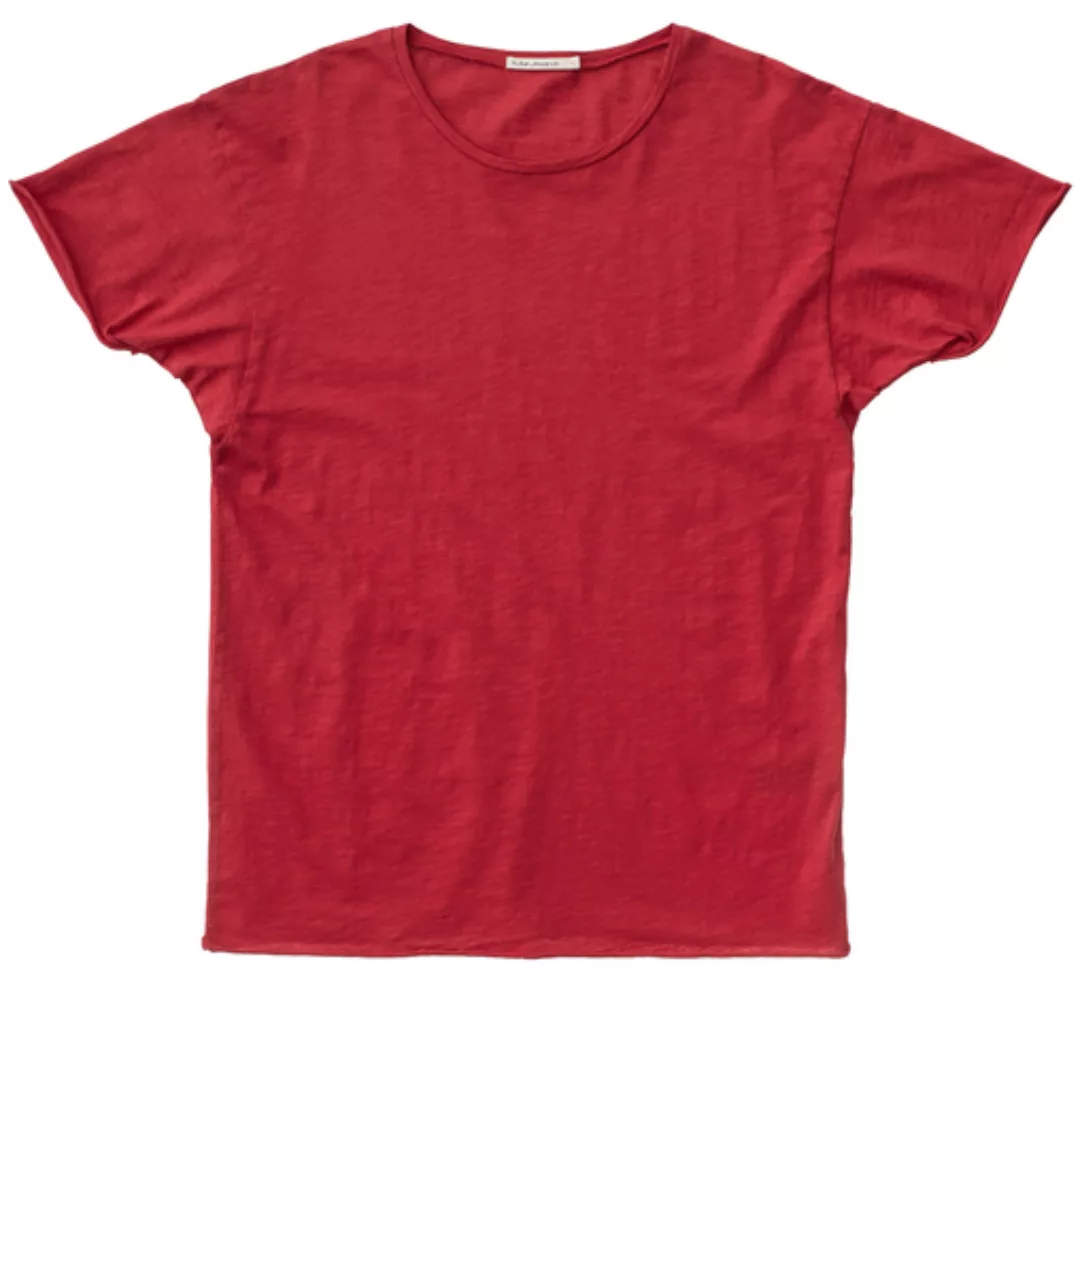 Nudie Jeans Roger Slub T-shirt günstig online kaufen